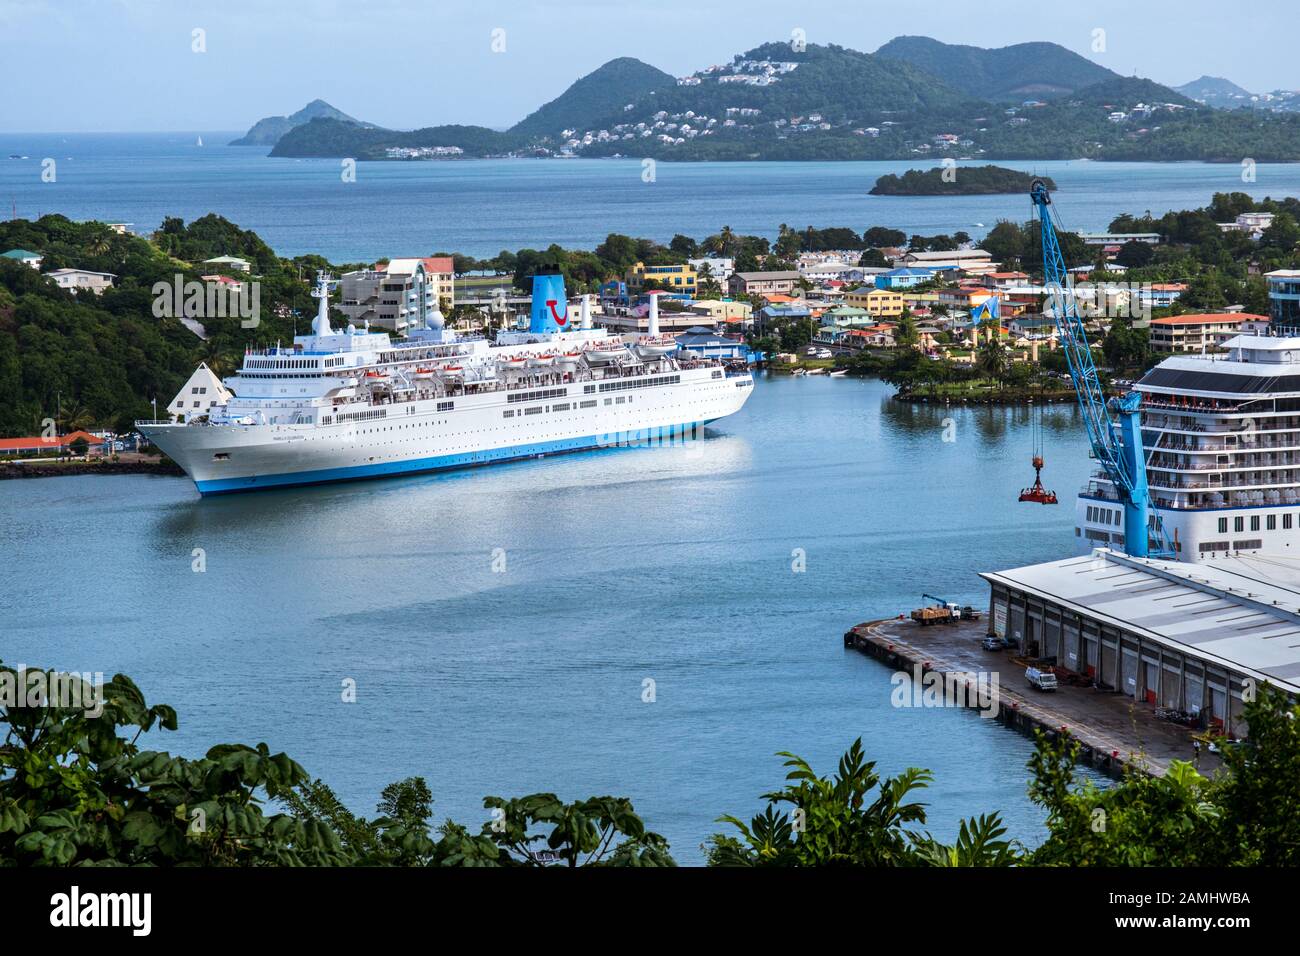 Marella bateau de croisière dans le port de Castries, la capitale de Sainte-Lucie, Antilles, Caraïbes. Banque D'Images